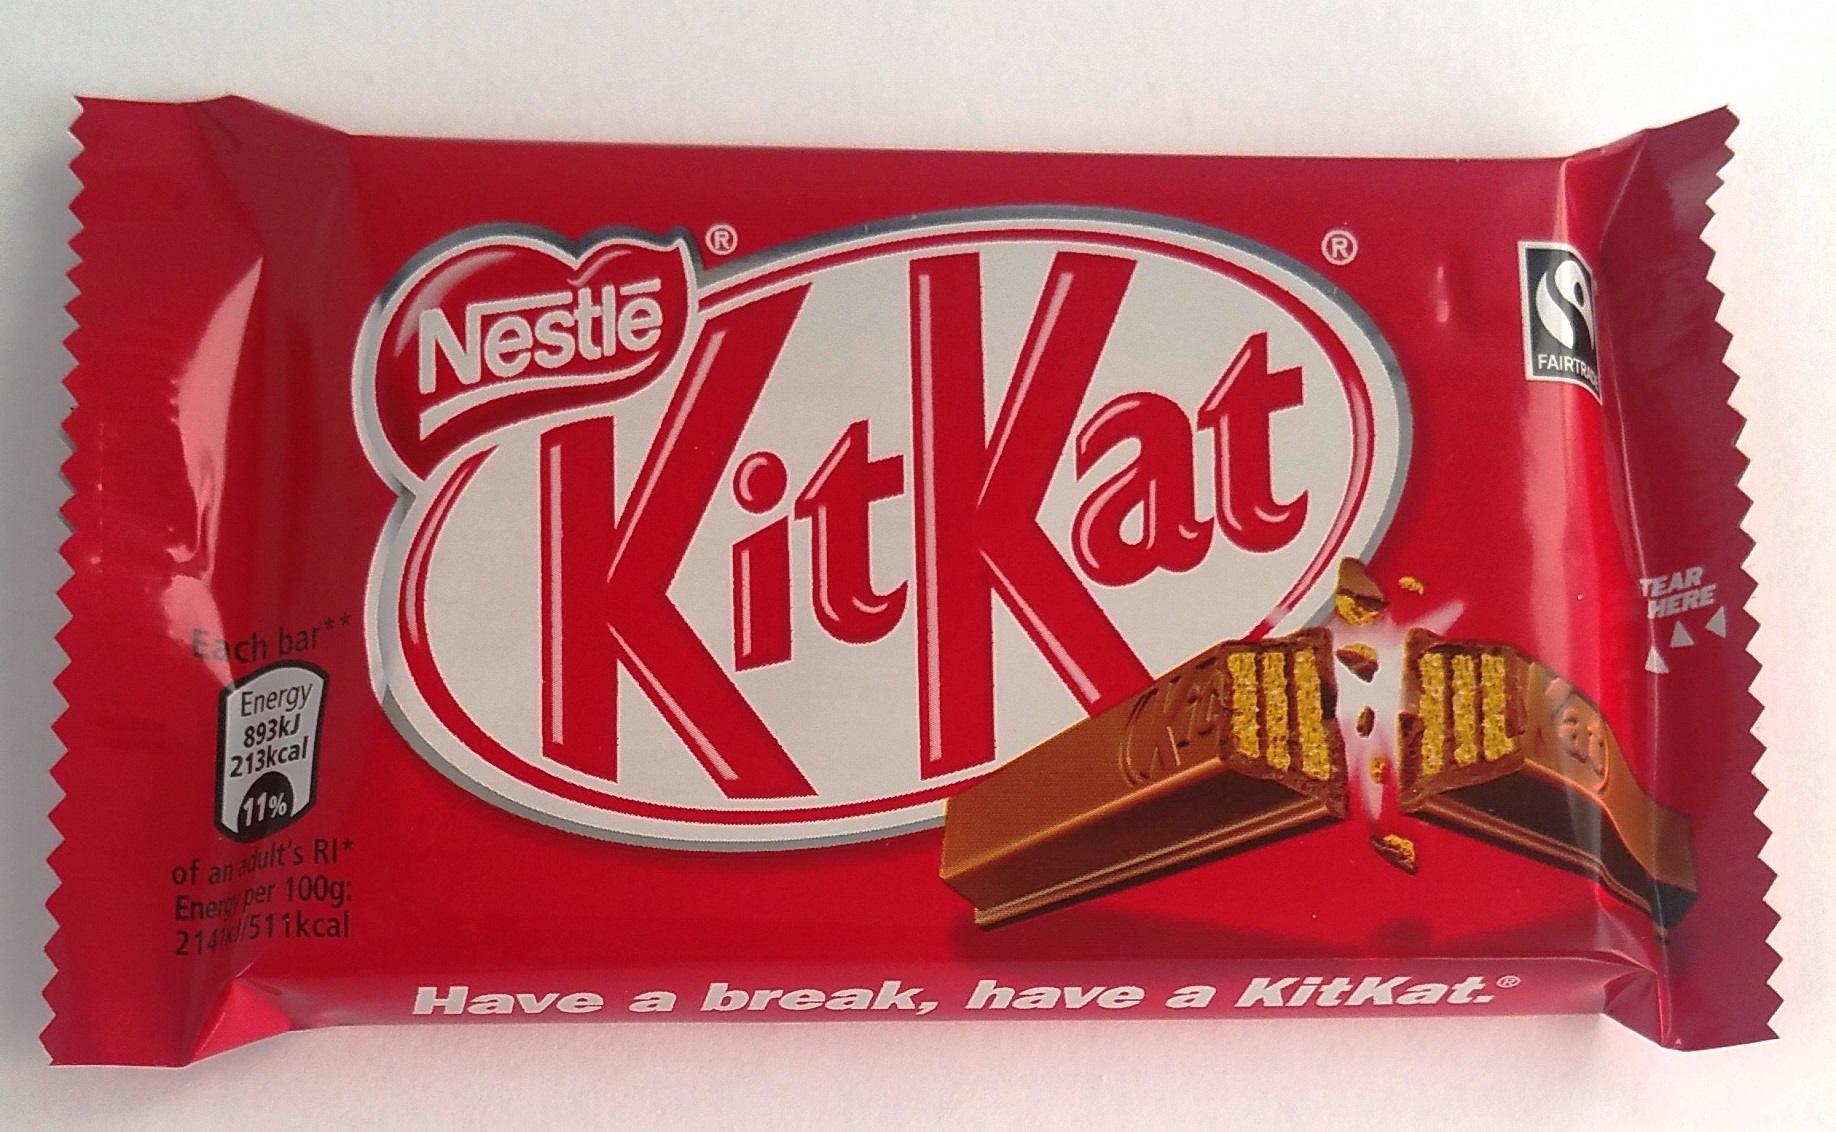 Kit Kat (Chocolate bar)